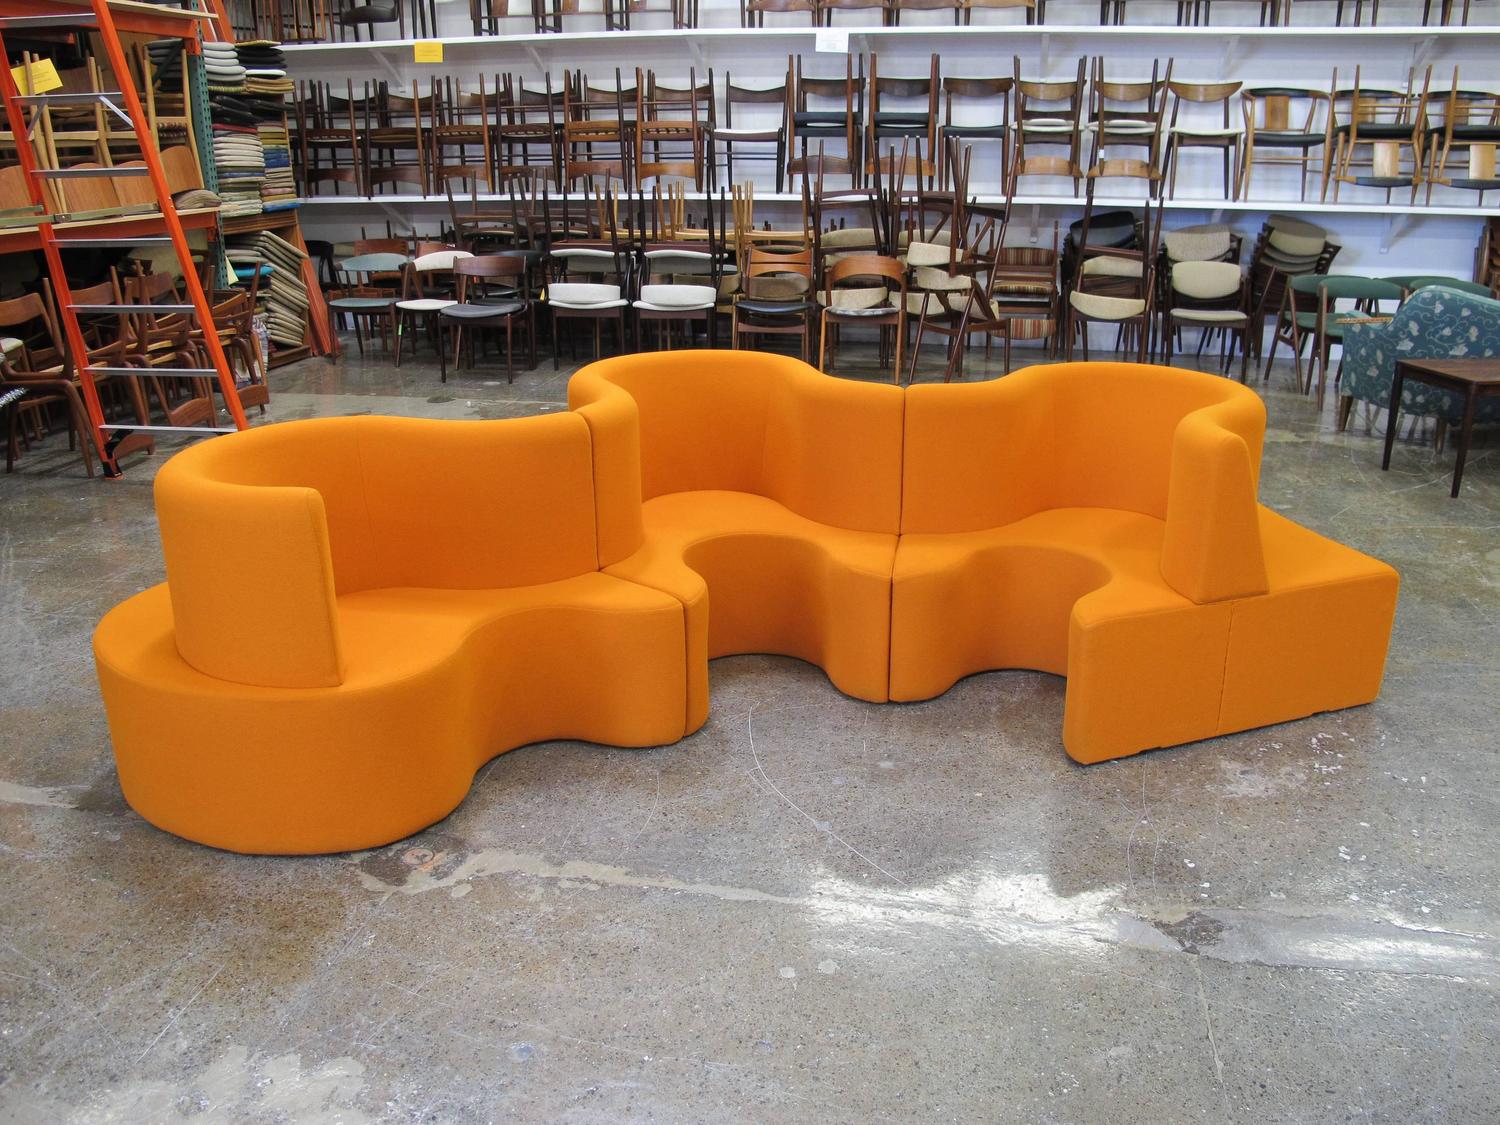 Verner Panton Cloverleaf Sofa in Orange For Sale at 1stdibs